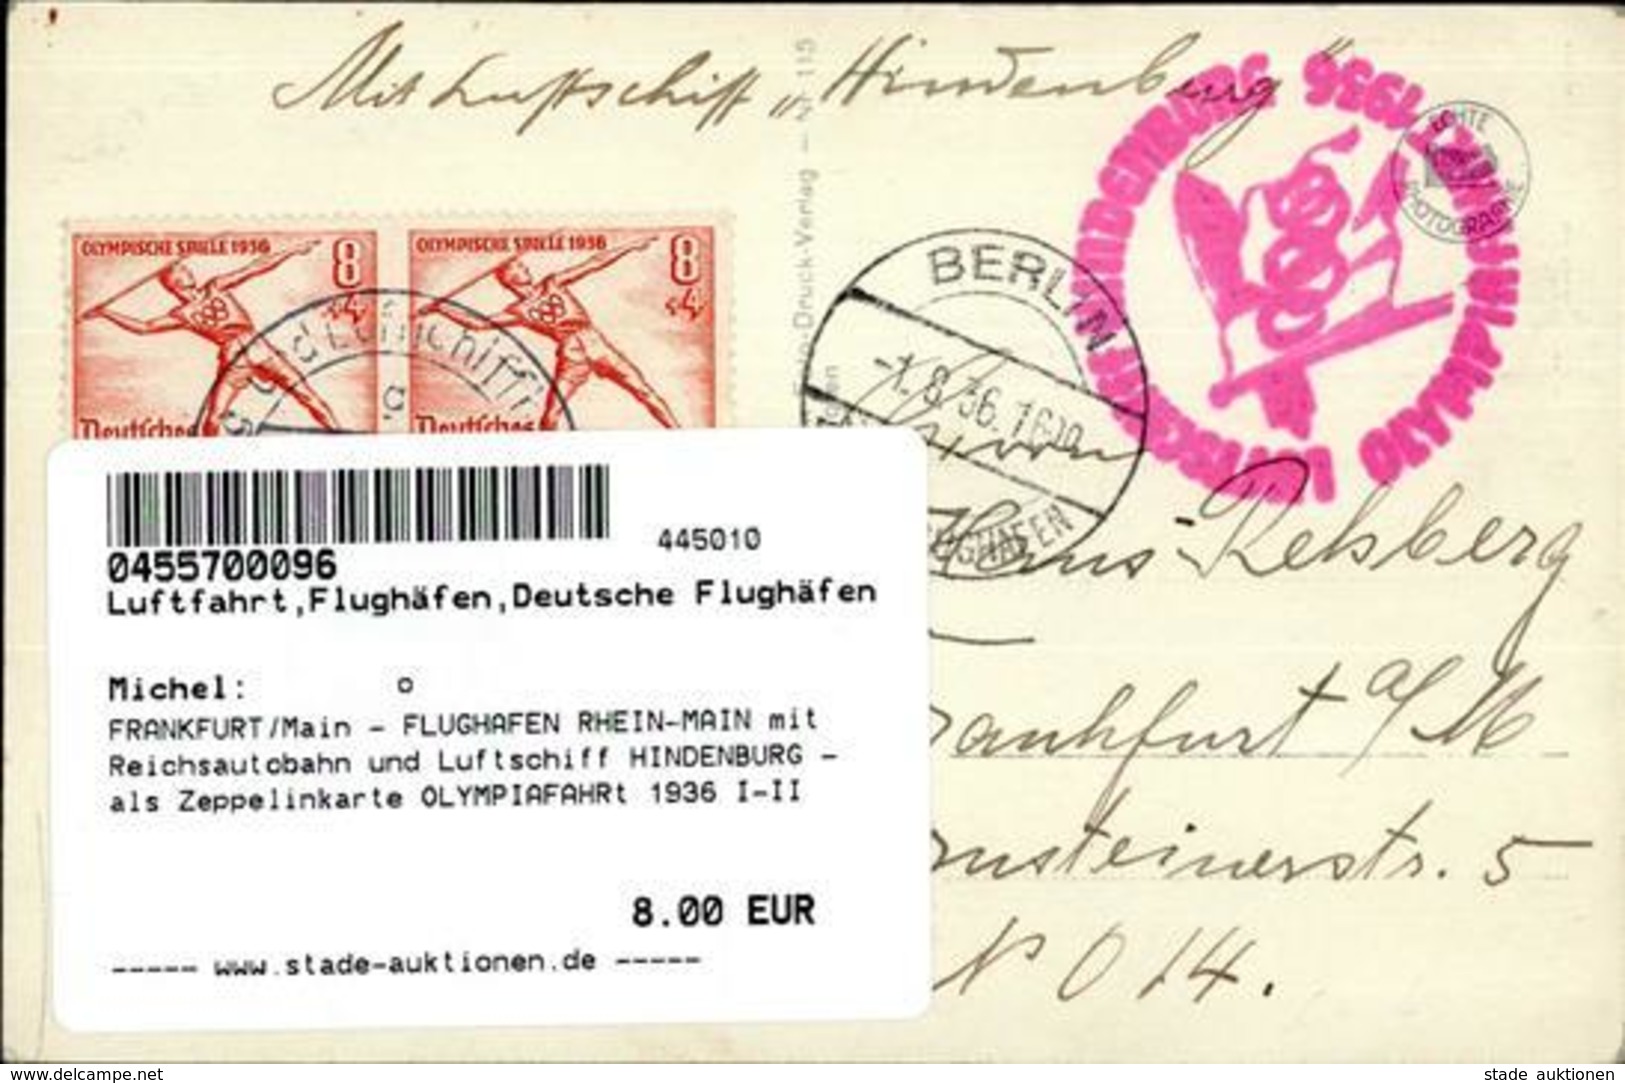 FRANKFURT/Main - FLUGHAFEN RHEIN-MAIN Mit Reichsautobahn Und Luftschiff HINDENBURG - Als Zeppelinkarte OLYMPIAFAHRt 1936 - Weltkrieg 1914-18